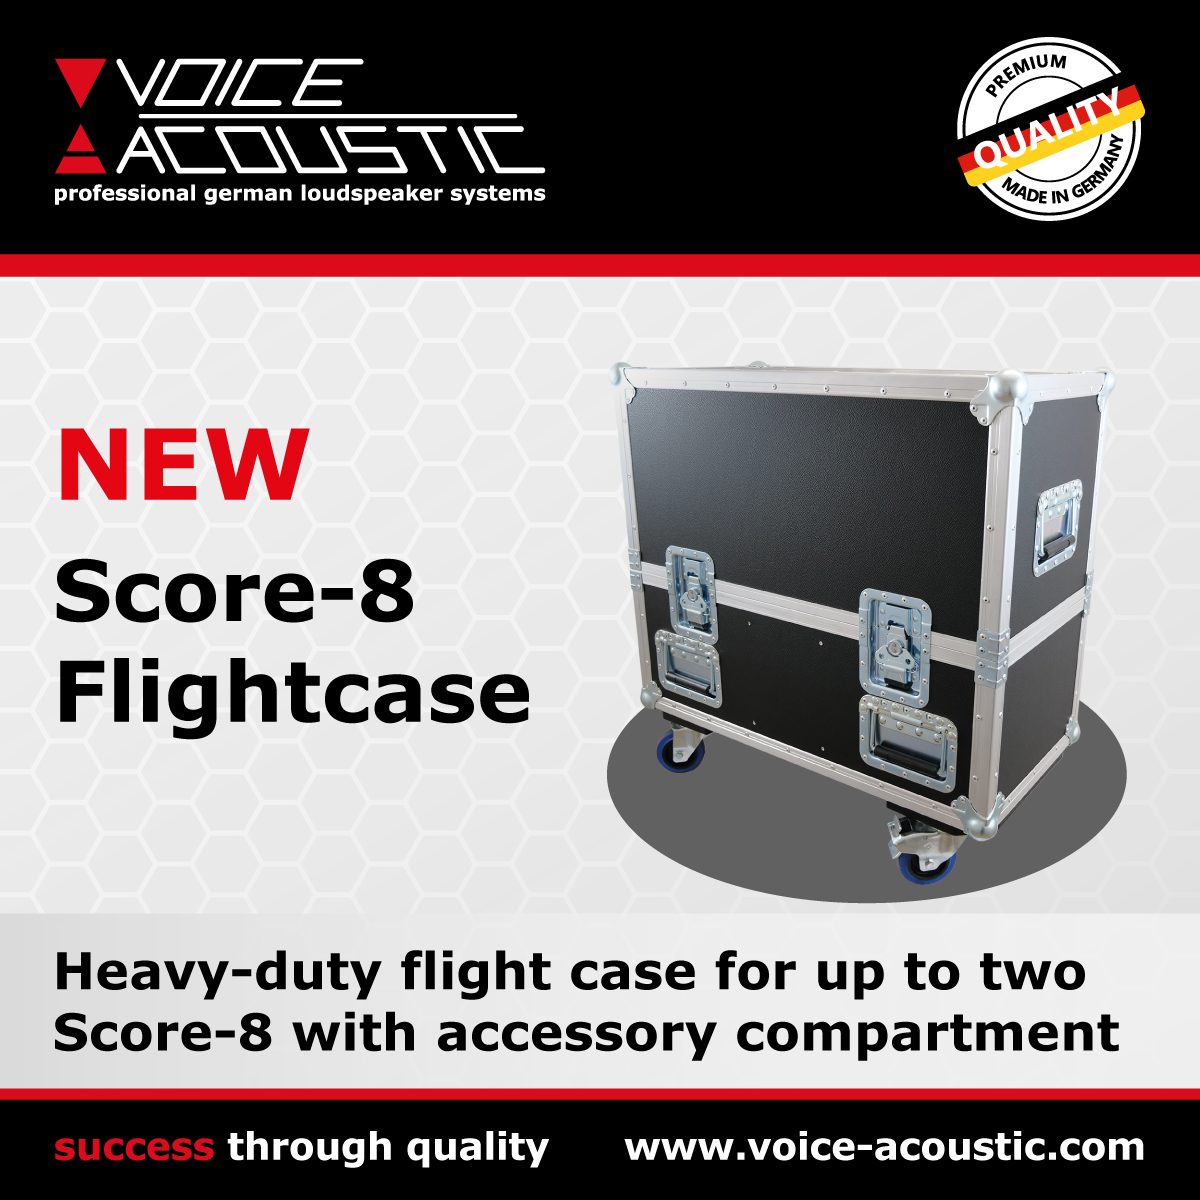 New in program - Score-8 Flightcase